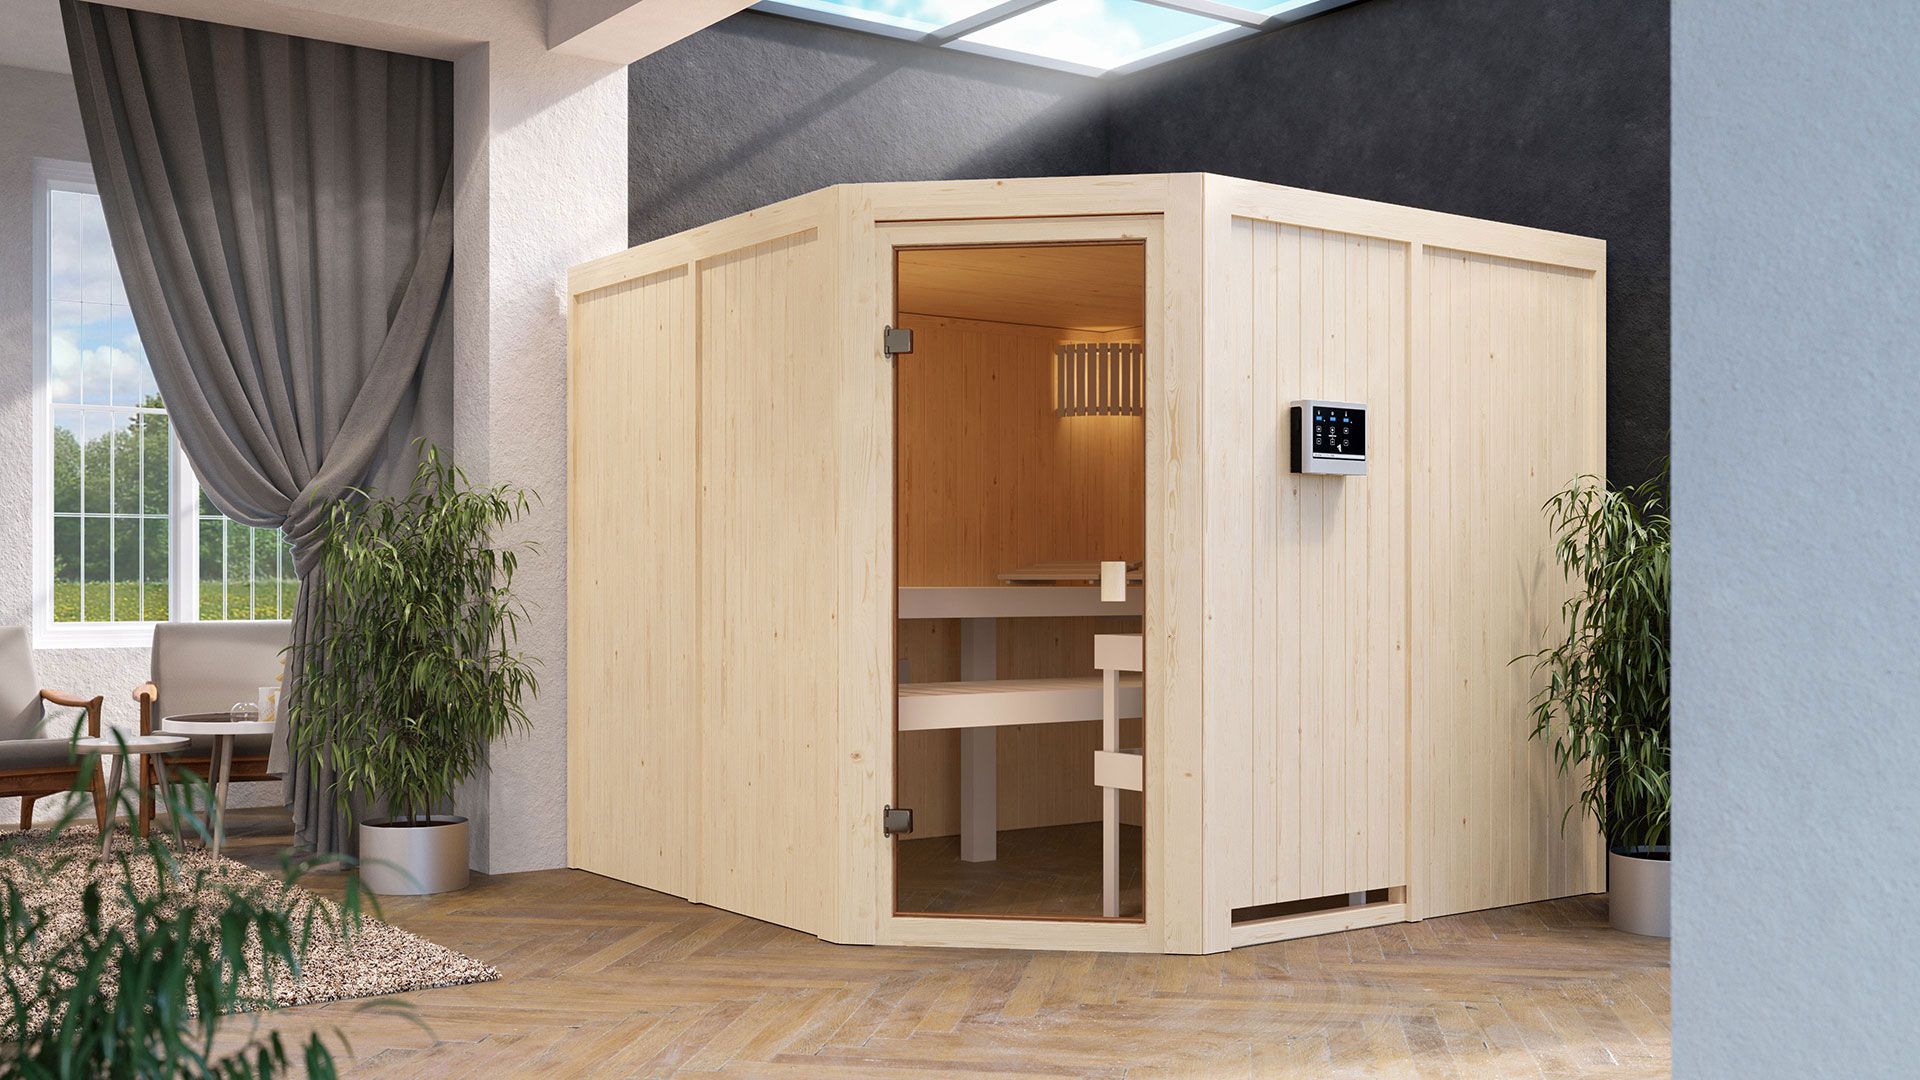 Sauna "Ilian" SET met bronskleurige deur - kleur: natuur, kachel externe regeling eenvoudig 9 kW - 231 x 231 x 198 cm (B x D x H)